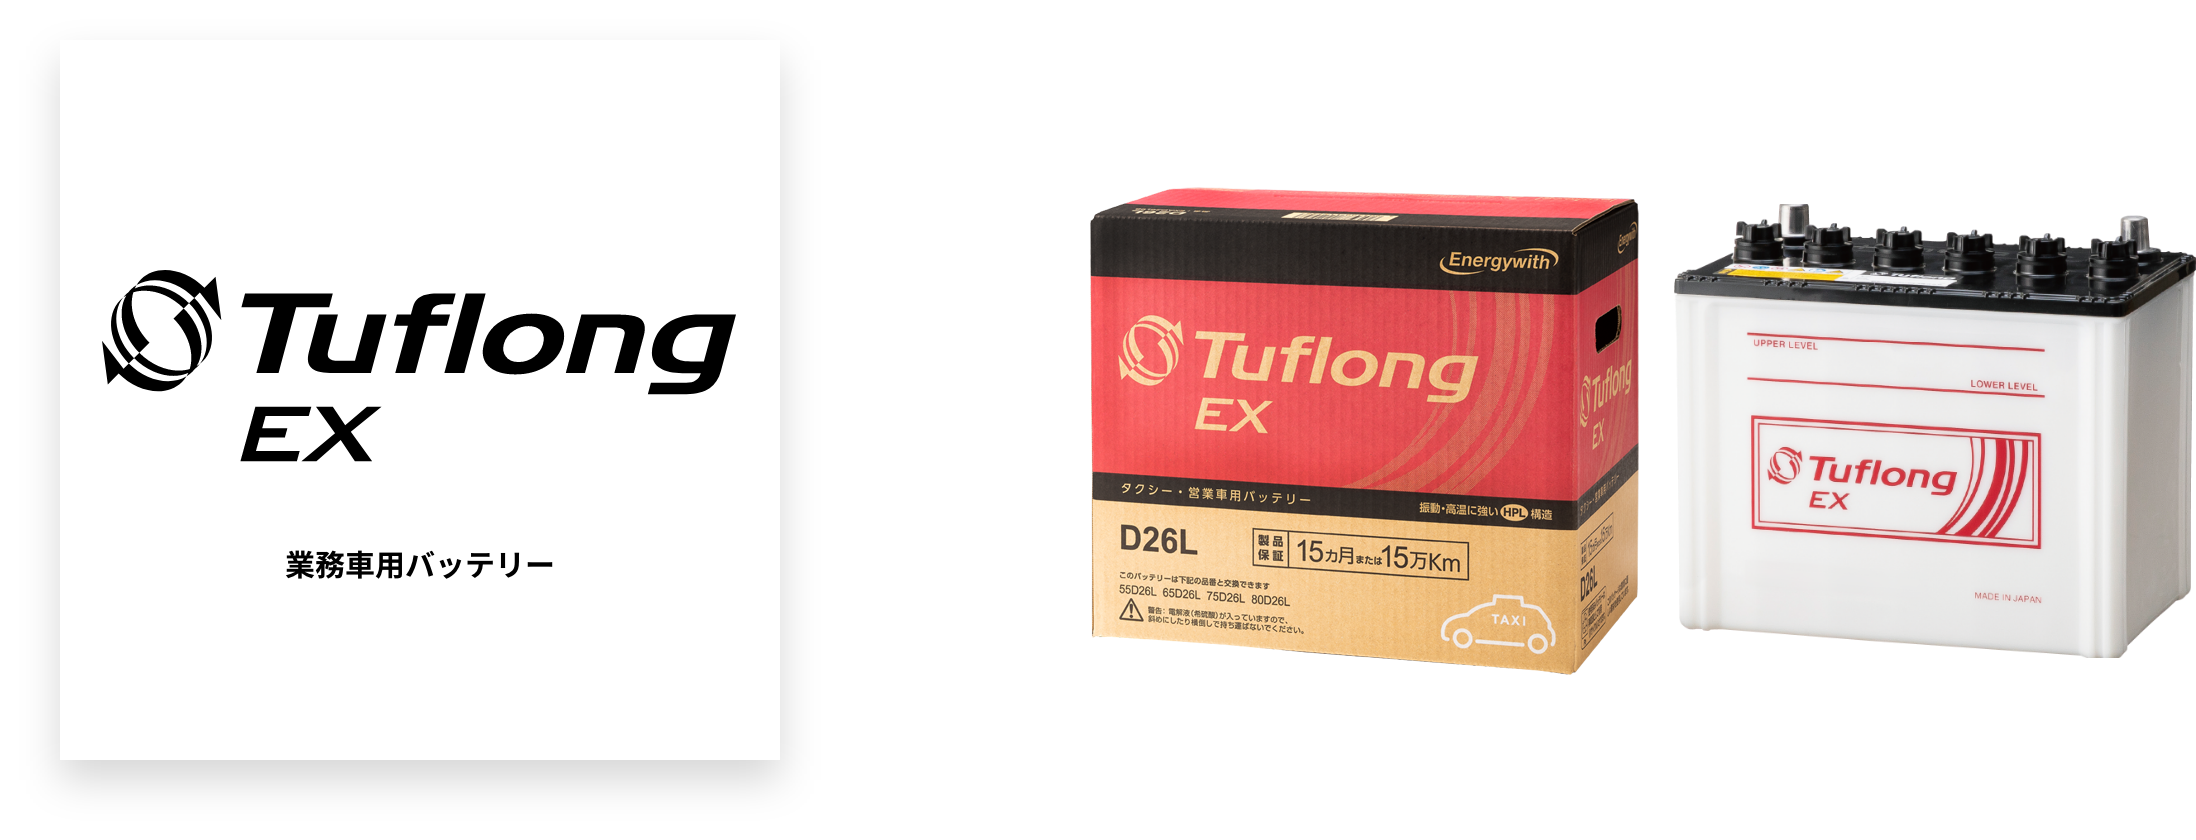 業務車用バッテリー Tuflong EX